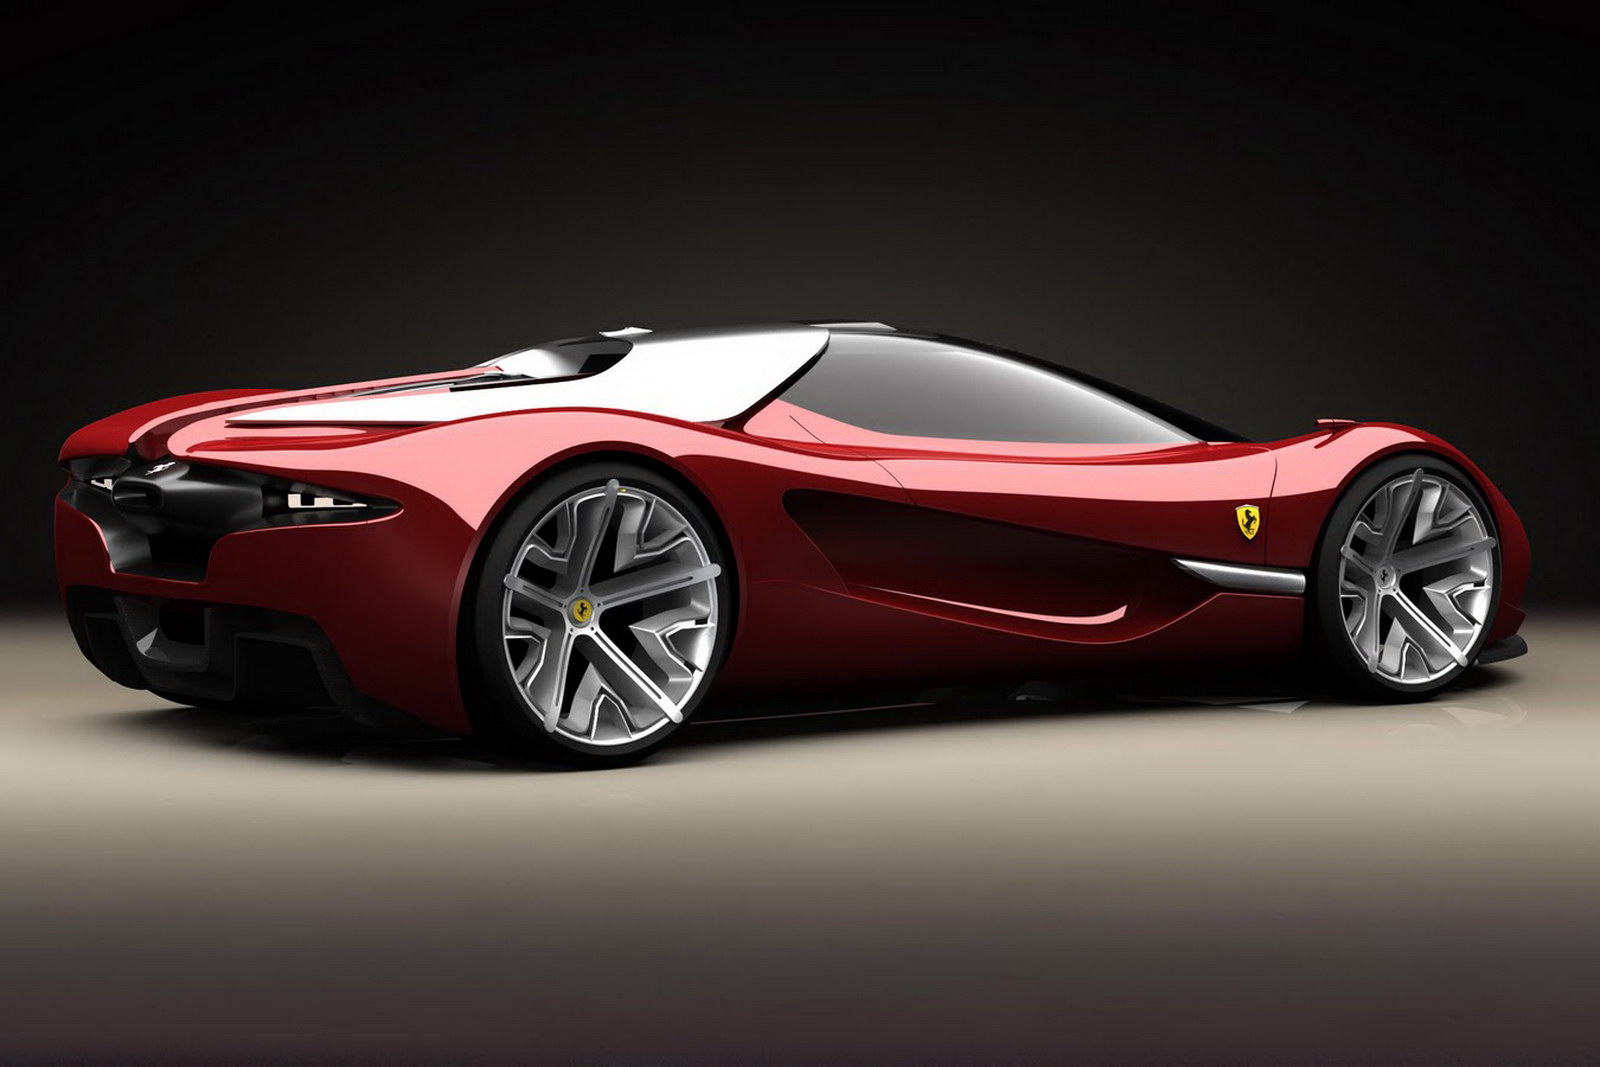 Ferrari Xezri Concept Backgrounds on Wallpapers Vista